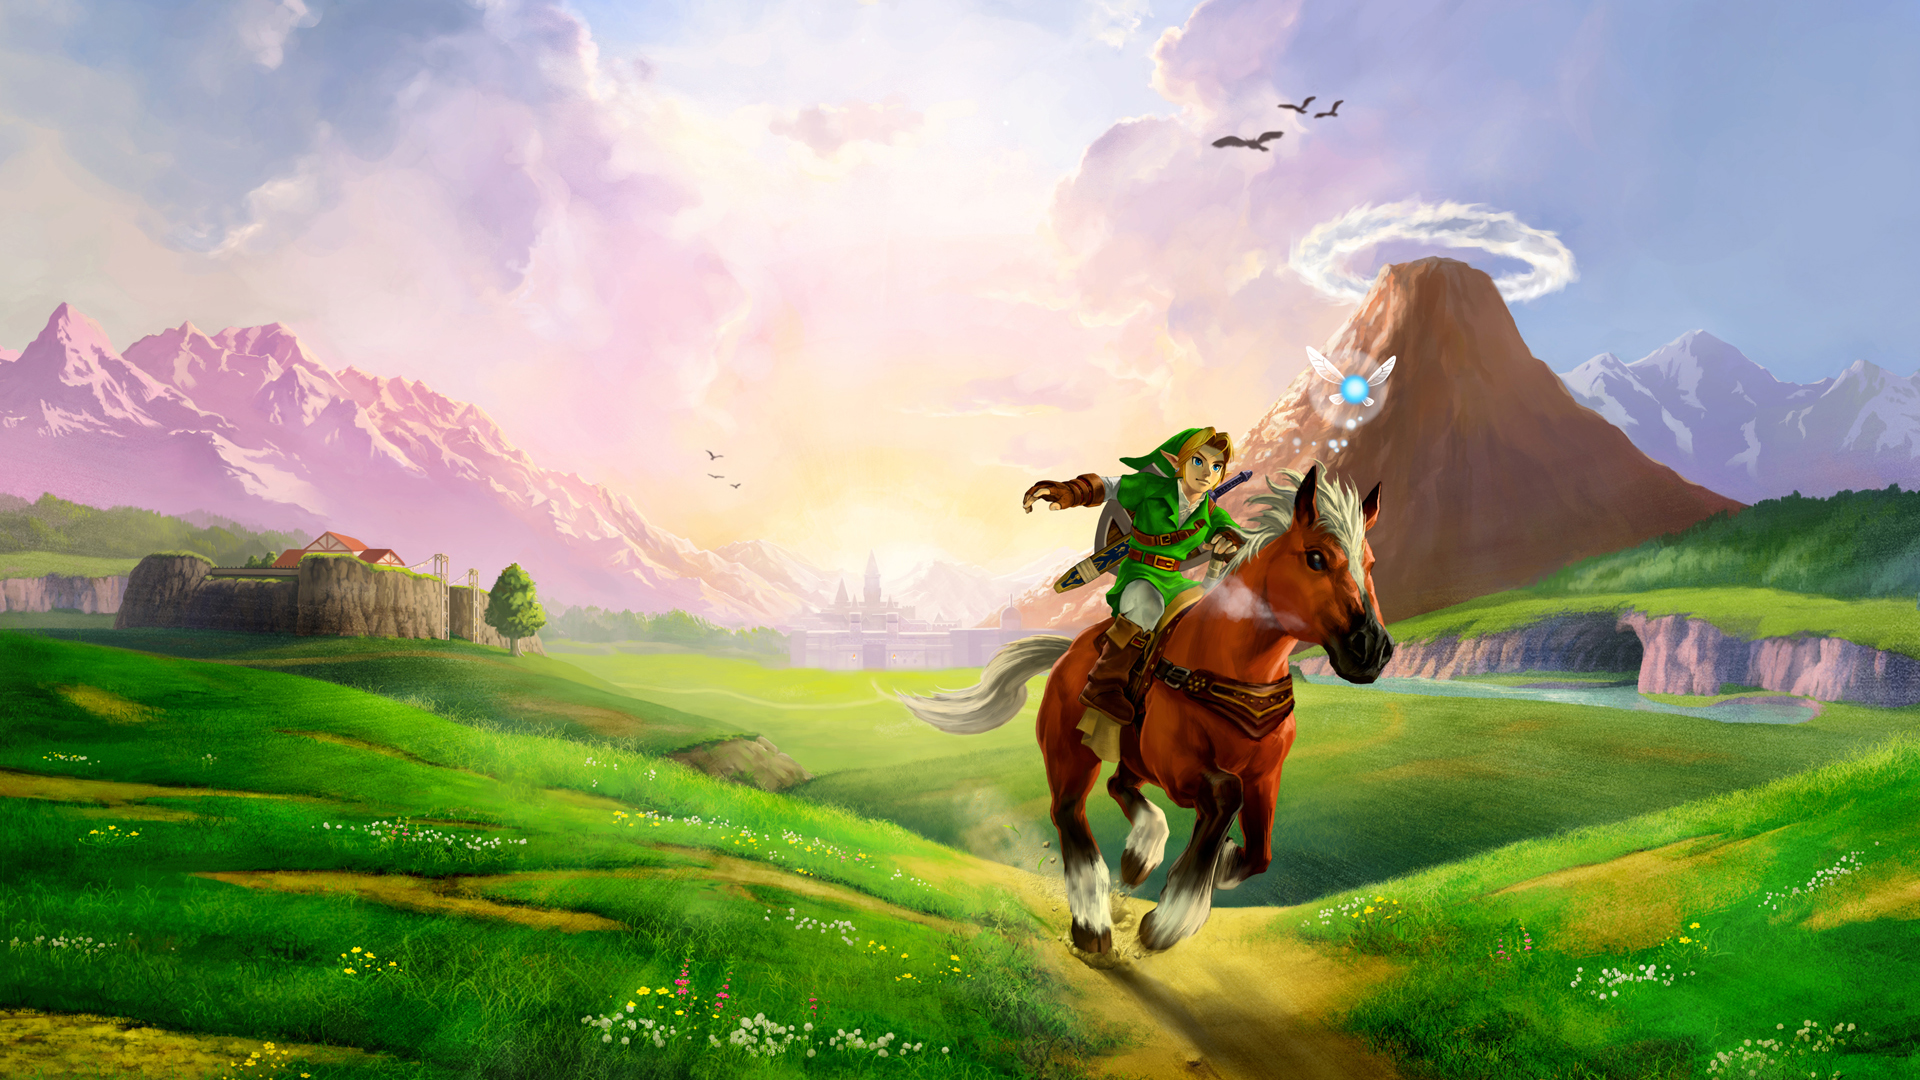 Link Hyrule Wallpaper The Legend Of Zelda